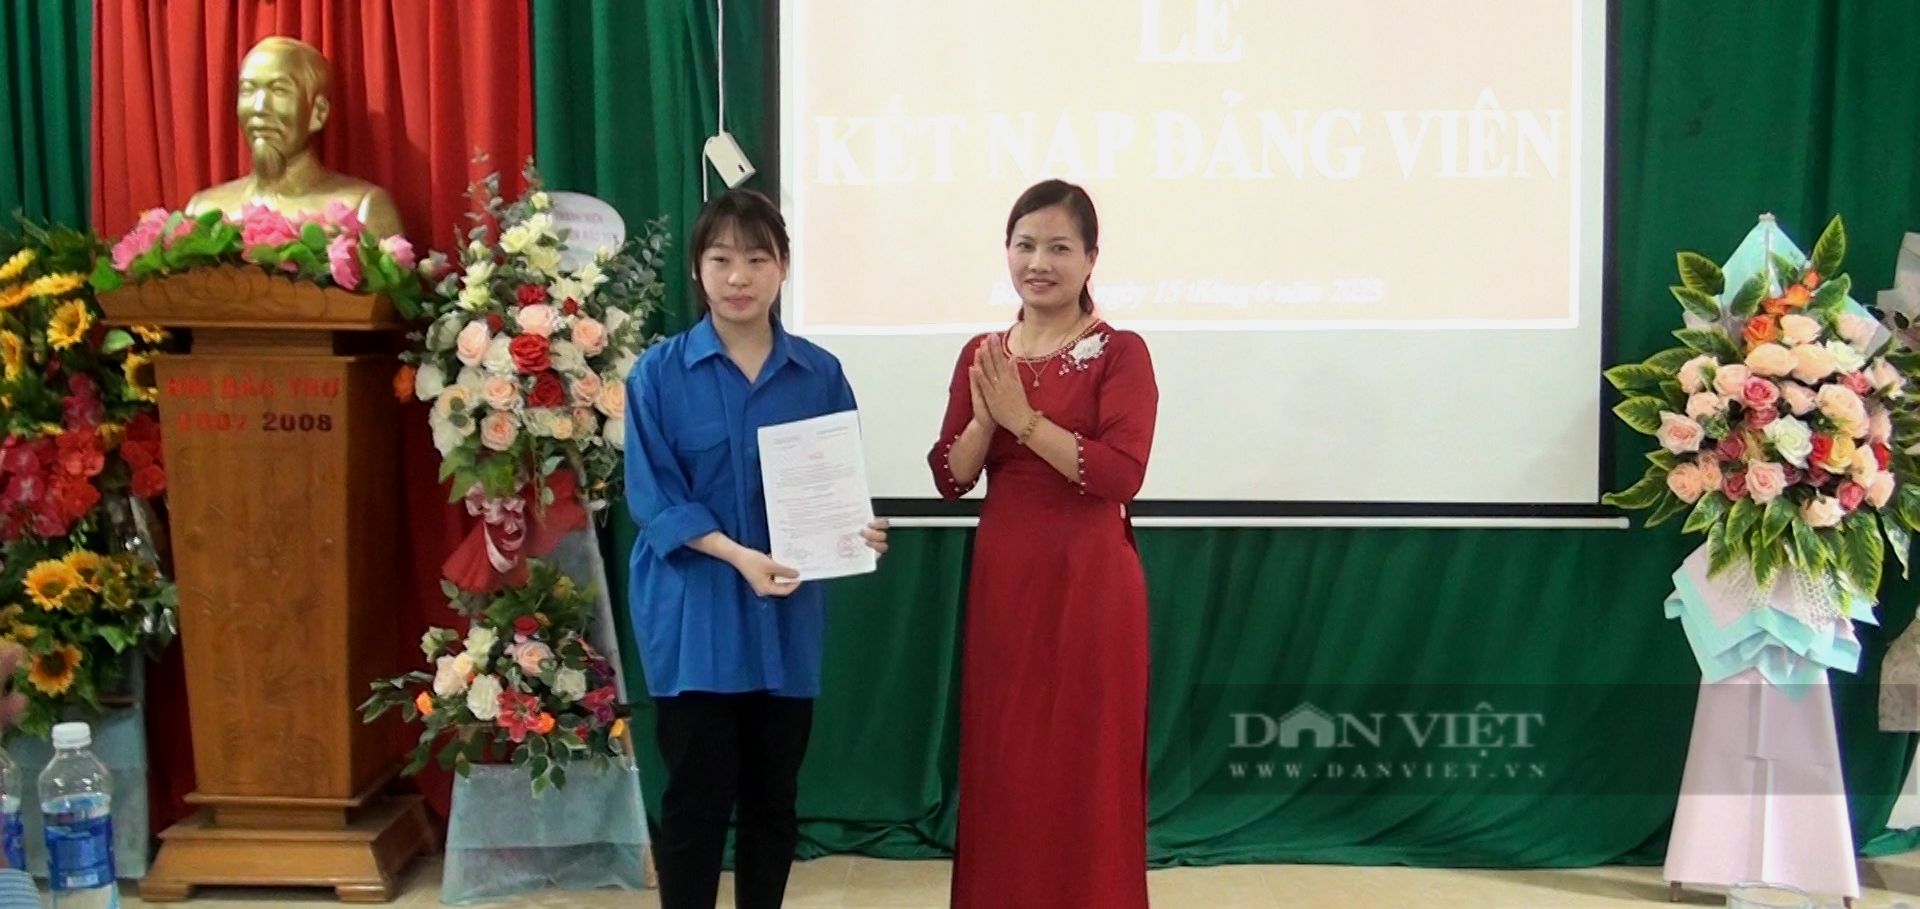 Học sinh THPT đầu tiên của huyện Bắc yên, tỉnh Sơn La được kết nạp Đảng - Ảnh 4.